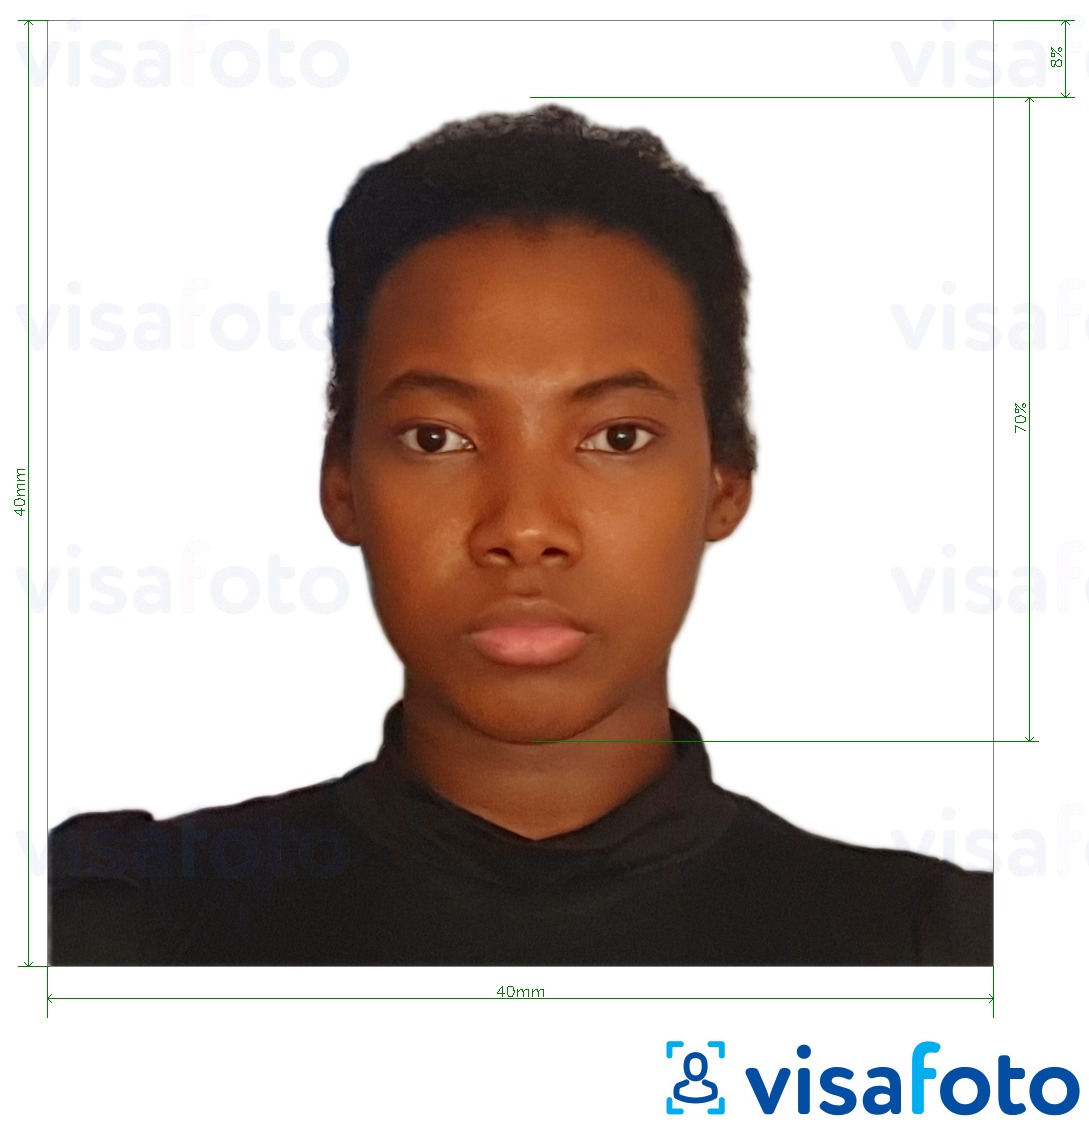 Příklad fotografie Madagaskarské vízum 40x40 mm s přesnou specifikací velikosti